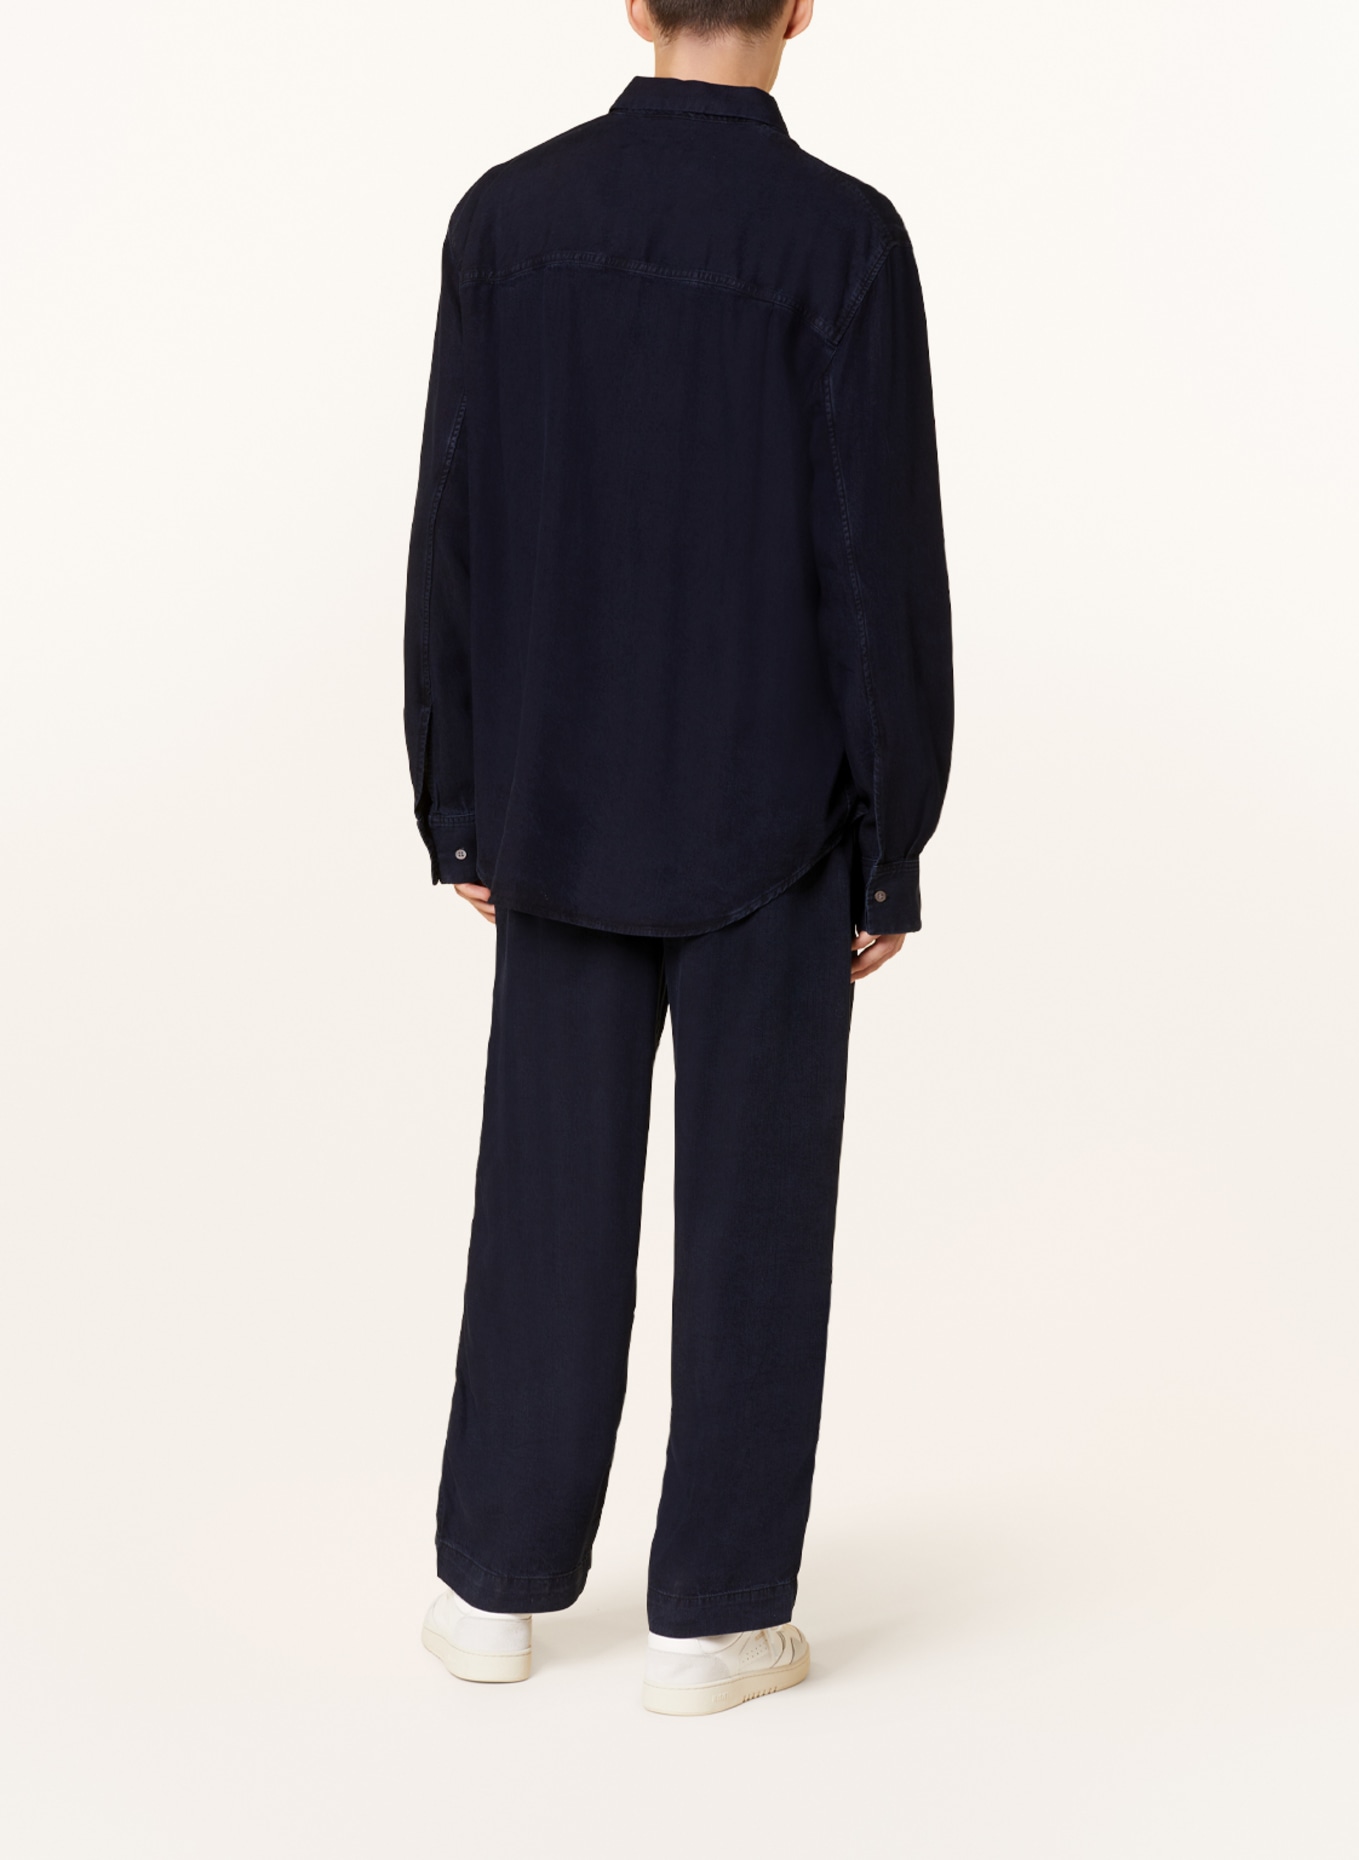 COS Hemd Oversized Fit in Jeansoptik, Farbe: 001 Blue Dark (Bild 3)